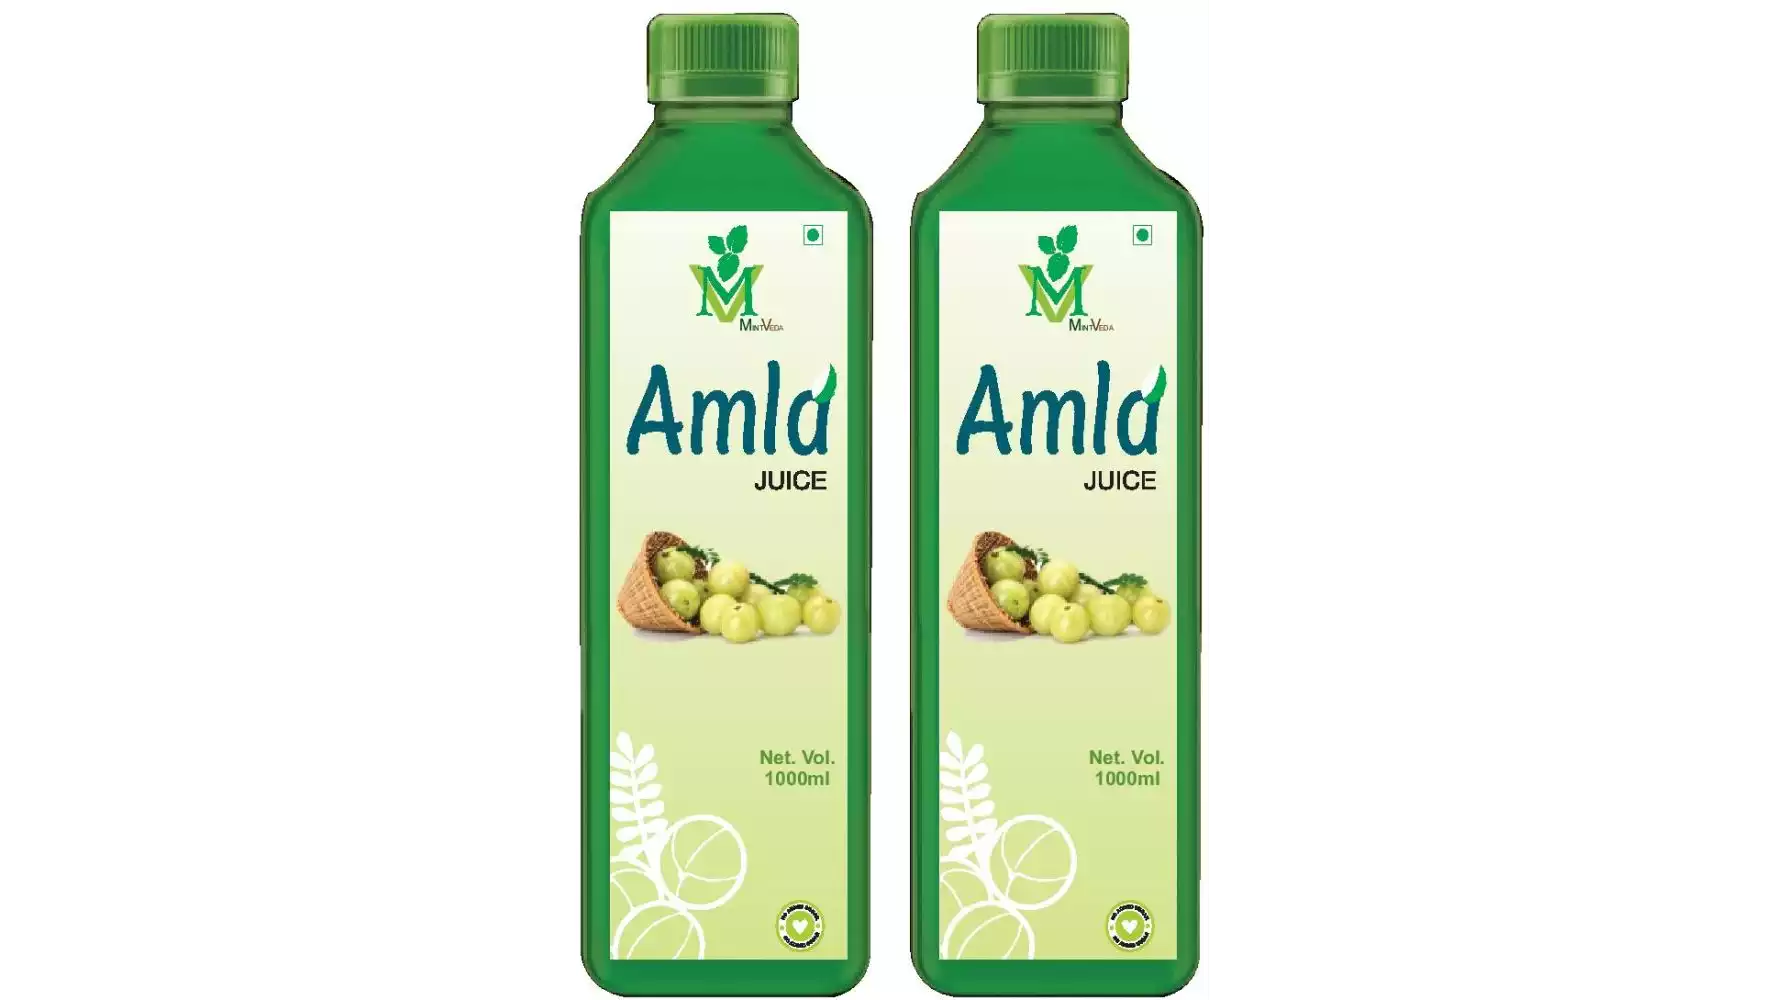 Mint Veda Amla (Sugar Free) Juice (1liter, Pack of 2)